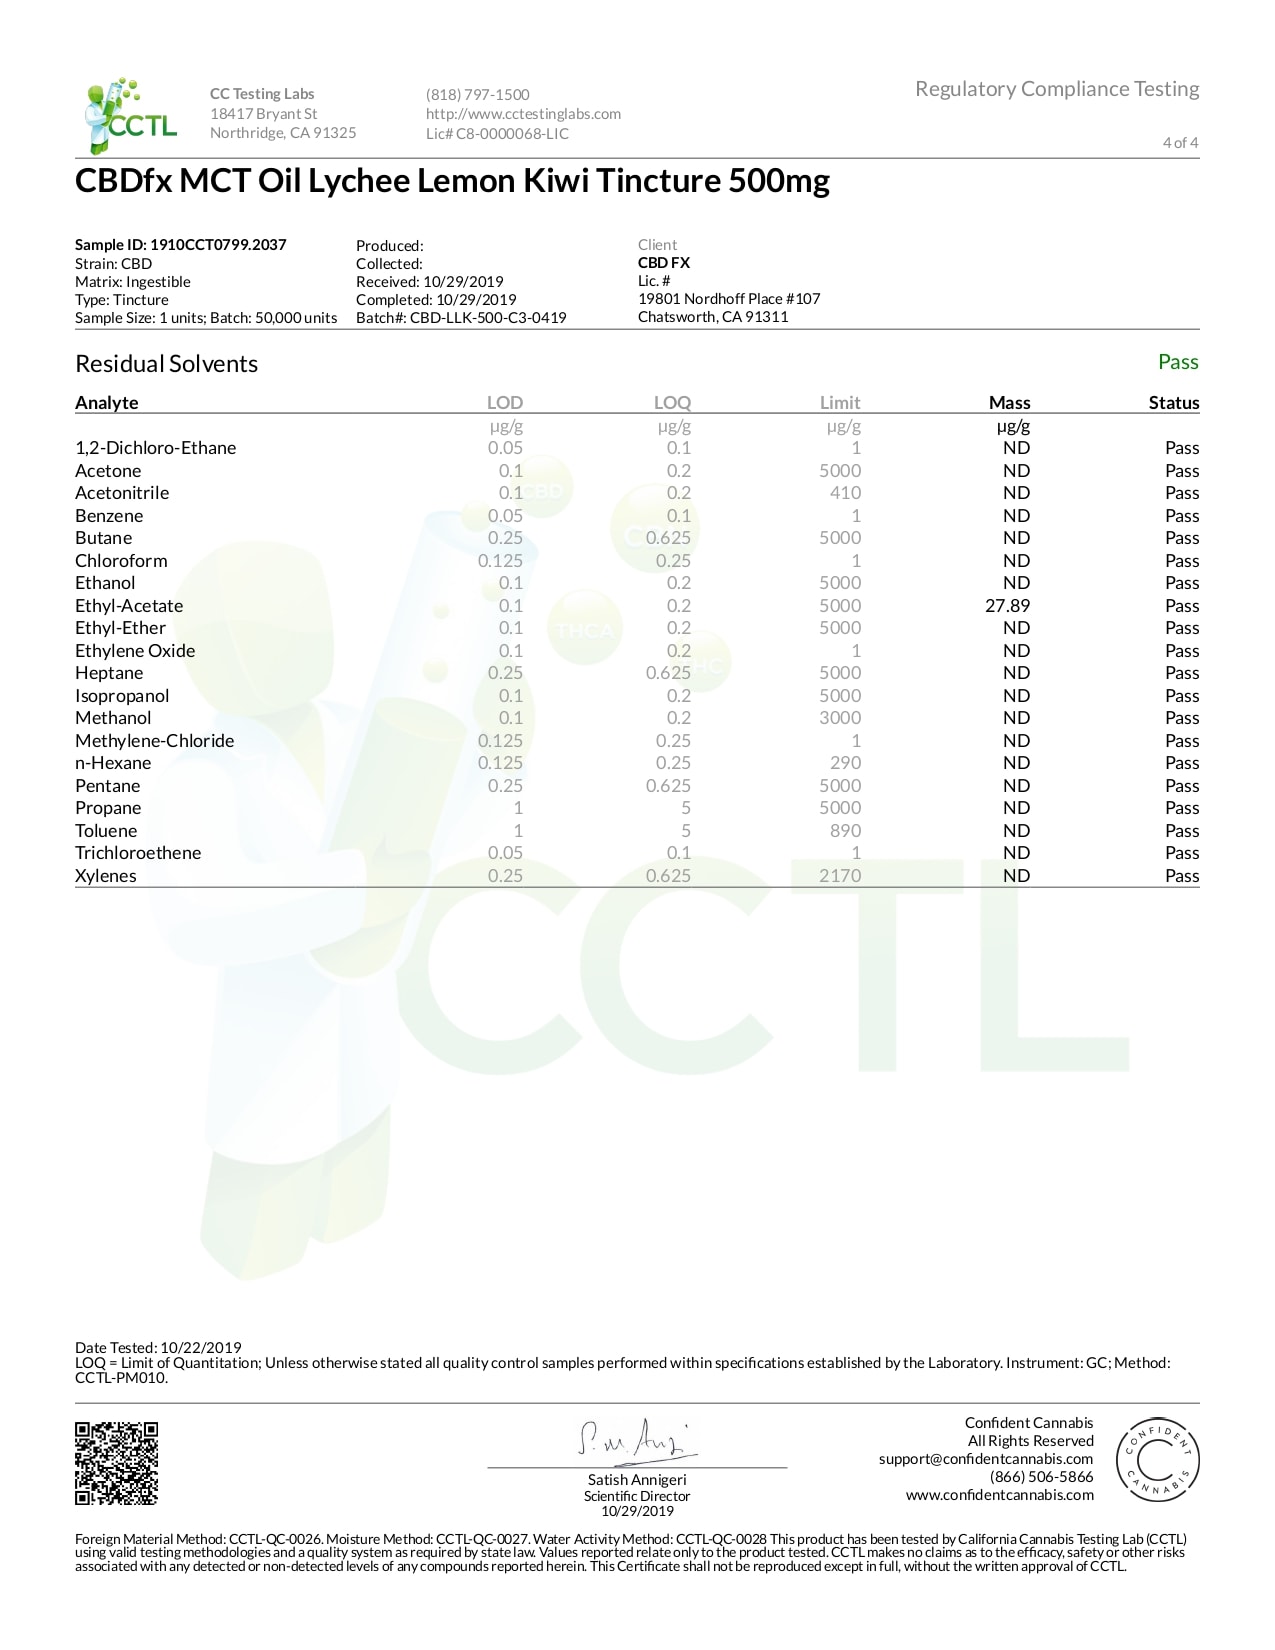 CBDfx Lychee Lemon Kiwi Lab Report CBD Oil Tincture 500mg